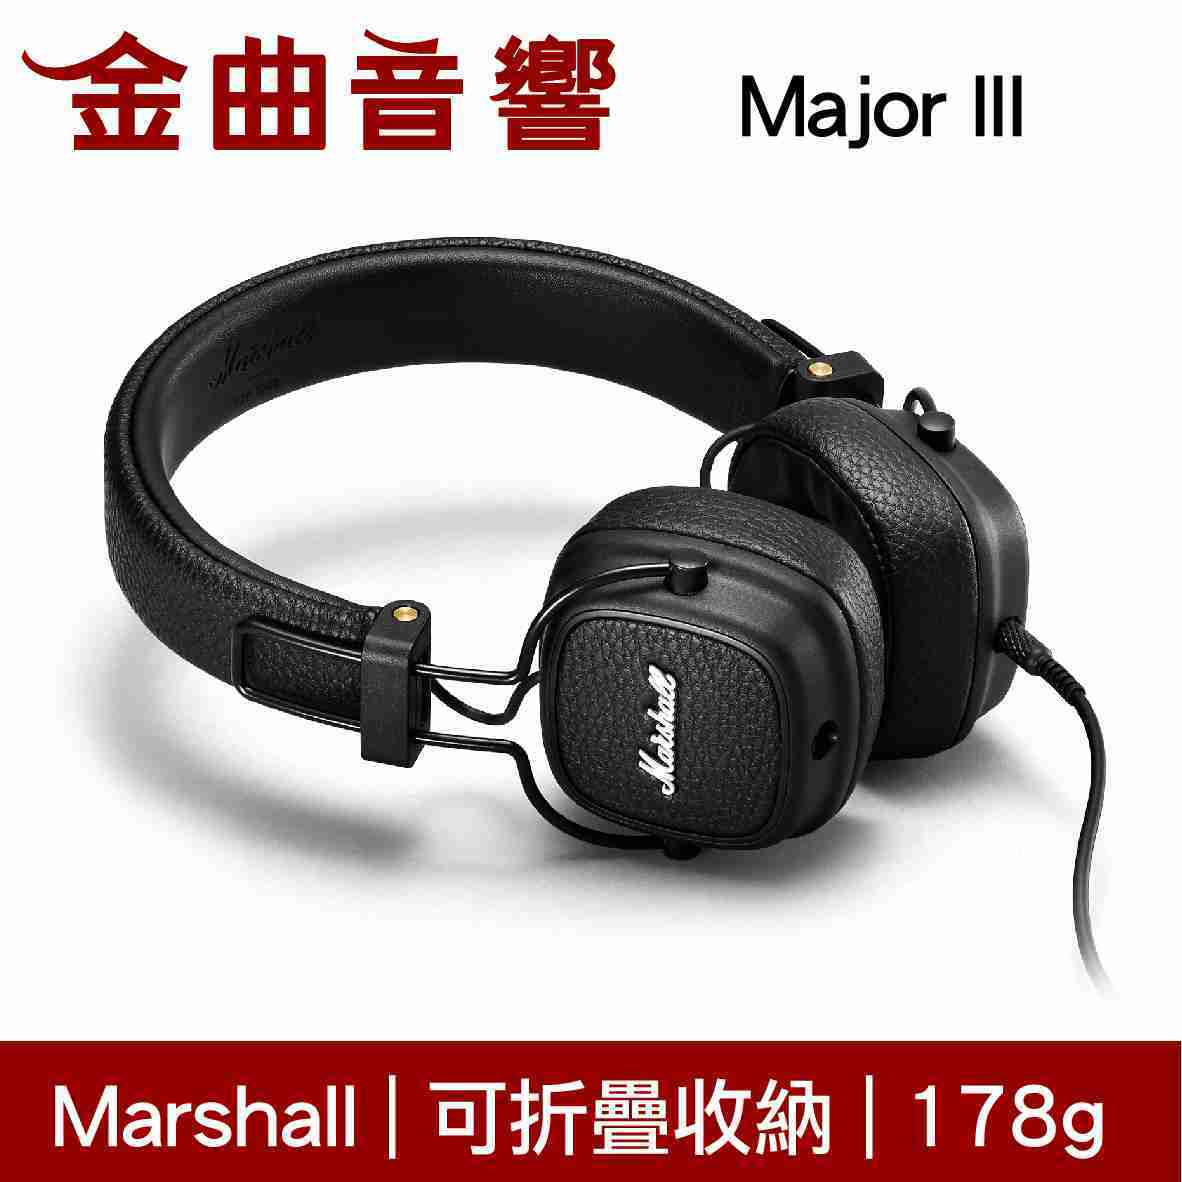 【福利機A組】Marshall MAJOR III 3 三代 有線版 耳罩式 耳機 | 金曲音響